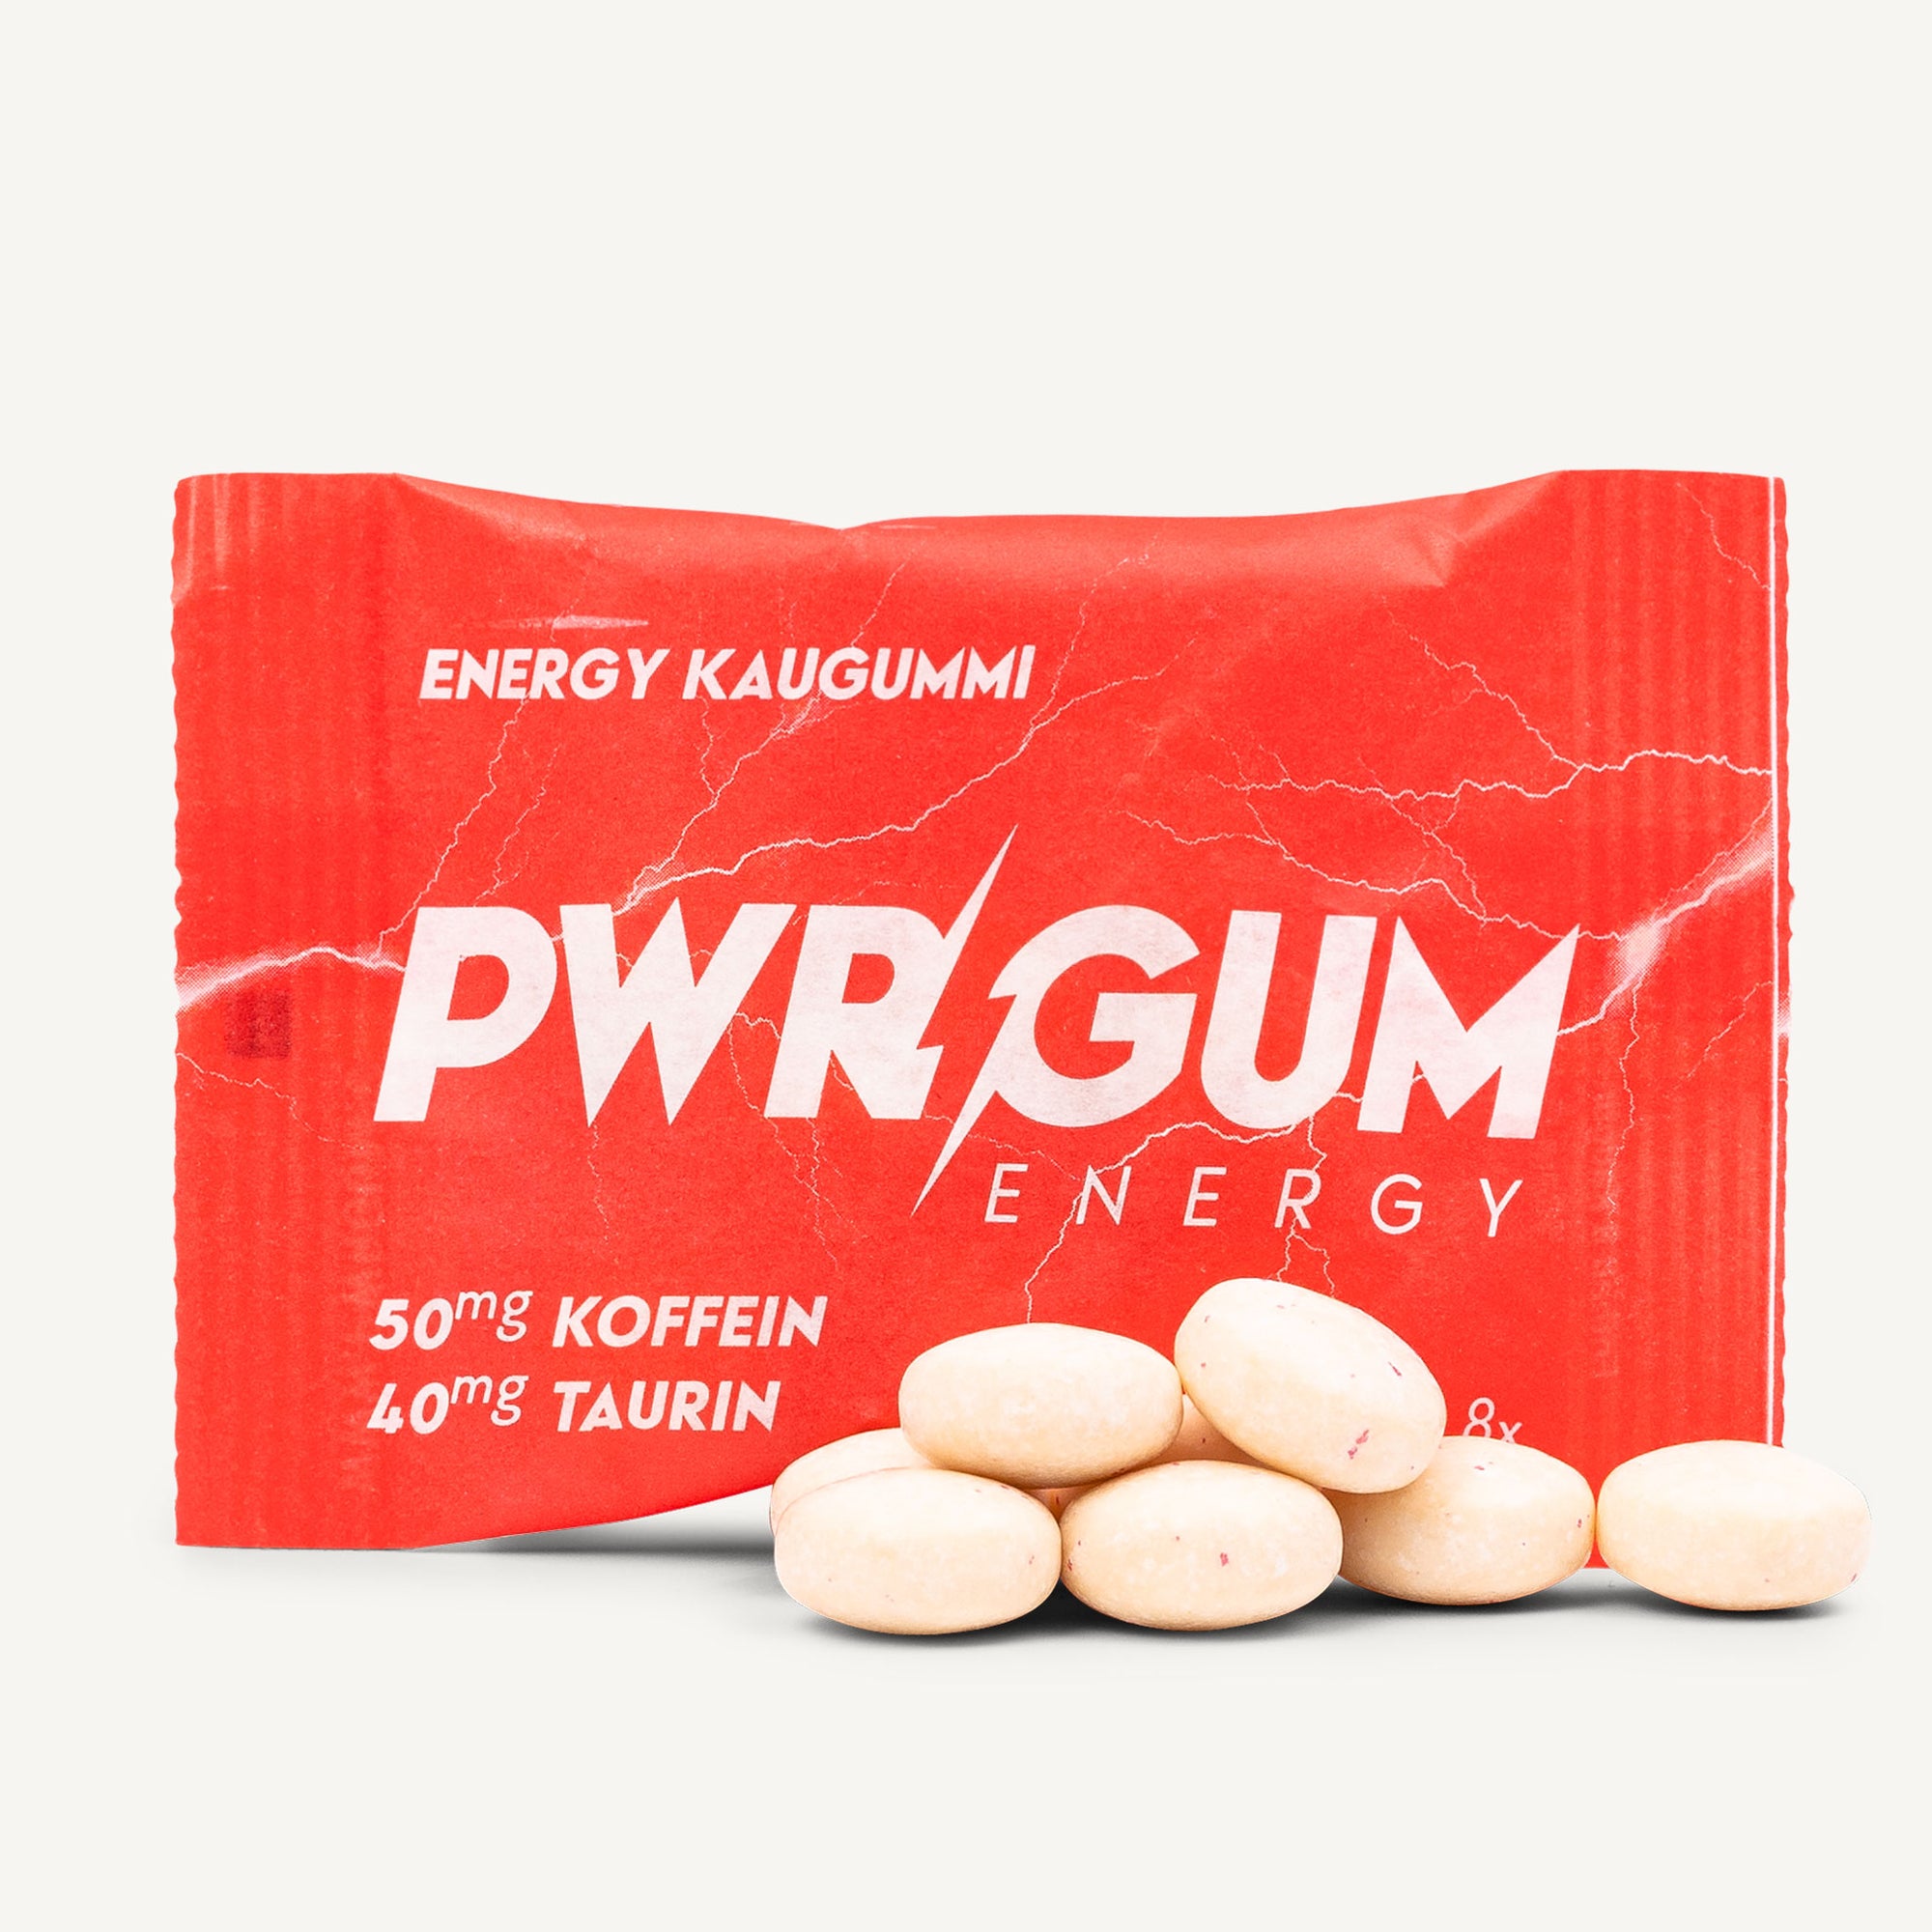 PWRGUM - Energy